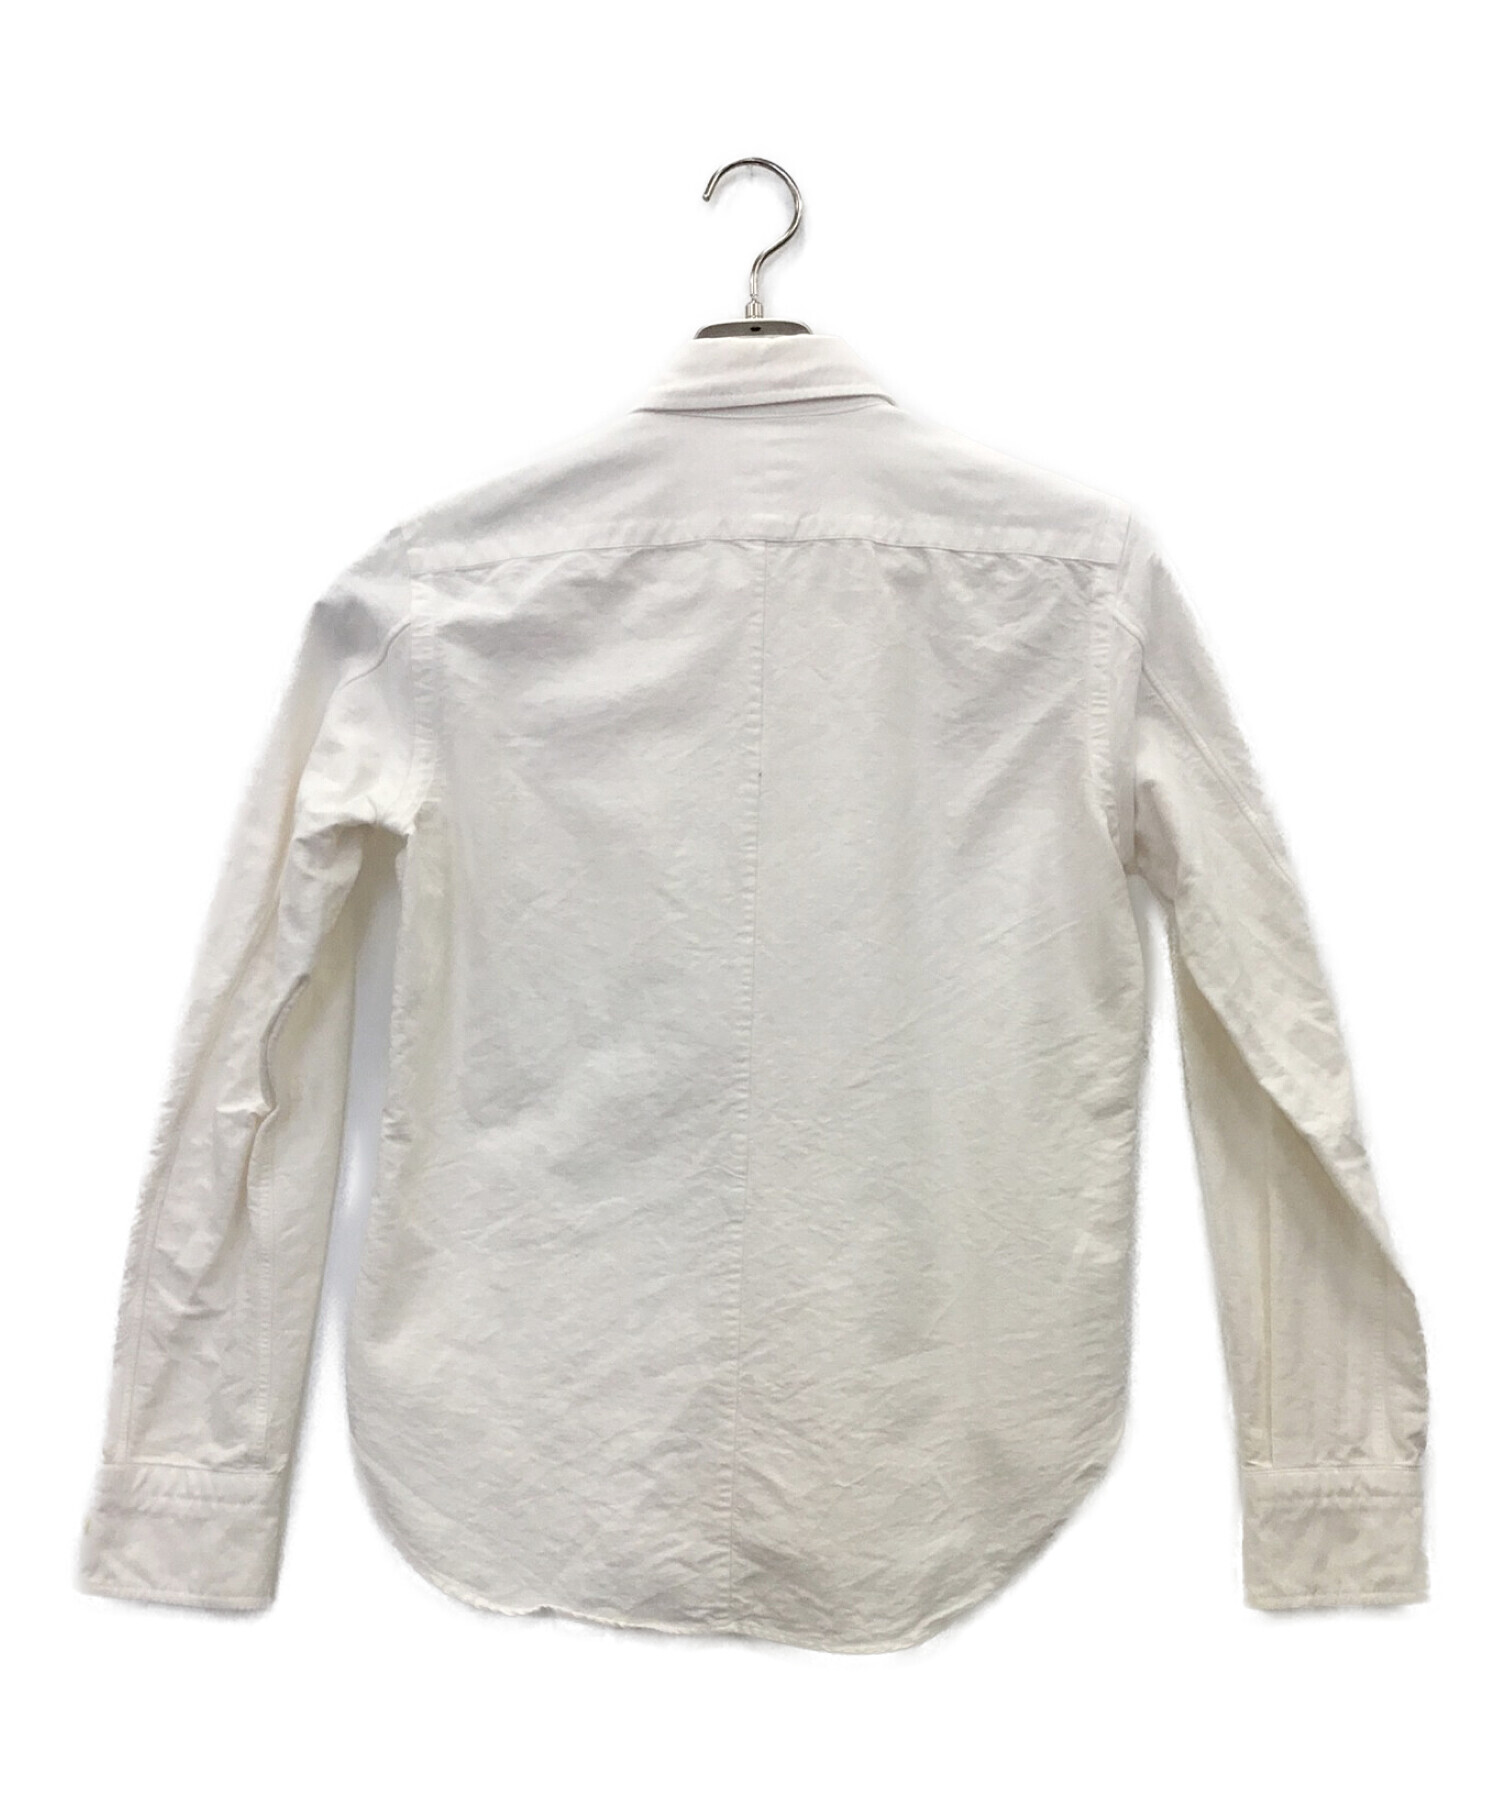 【TATRAS(タトラス)】MEROPE(メロペ)Tシャツ/ホワイト/サイズ3